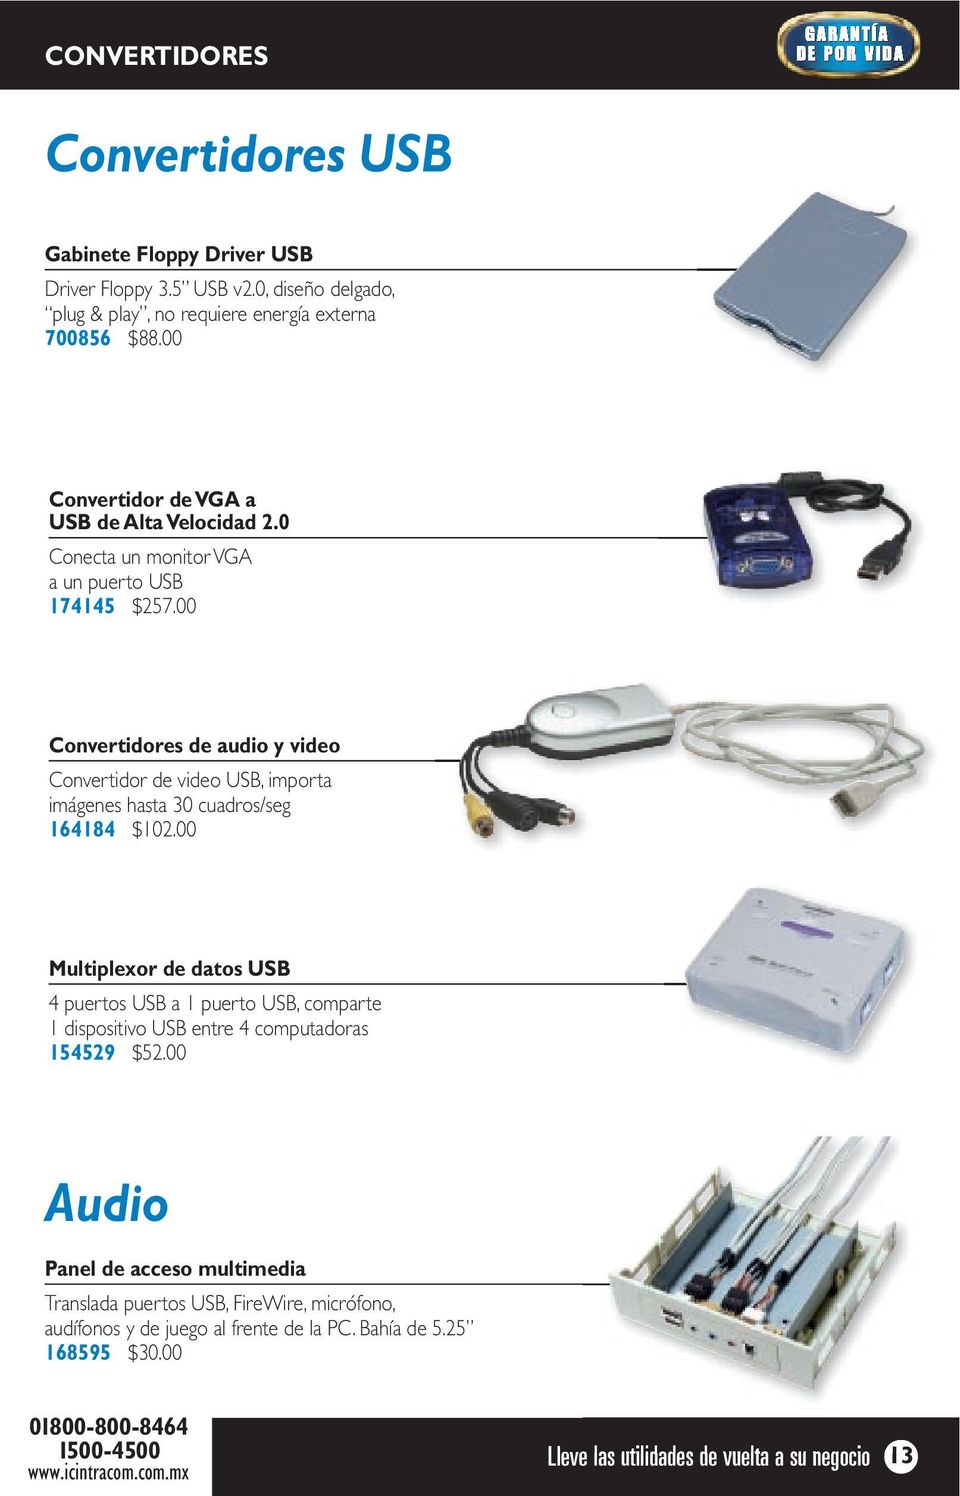 00 Convertidores de audio y video Convertidor de video USB, importa imágenes hasta 30 cuadros/seg 164184 $102.